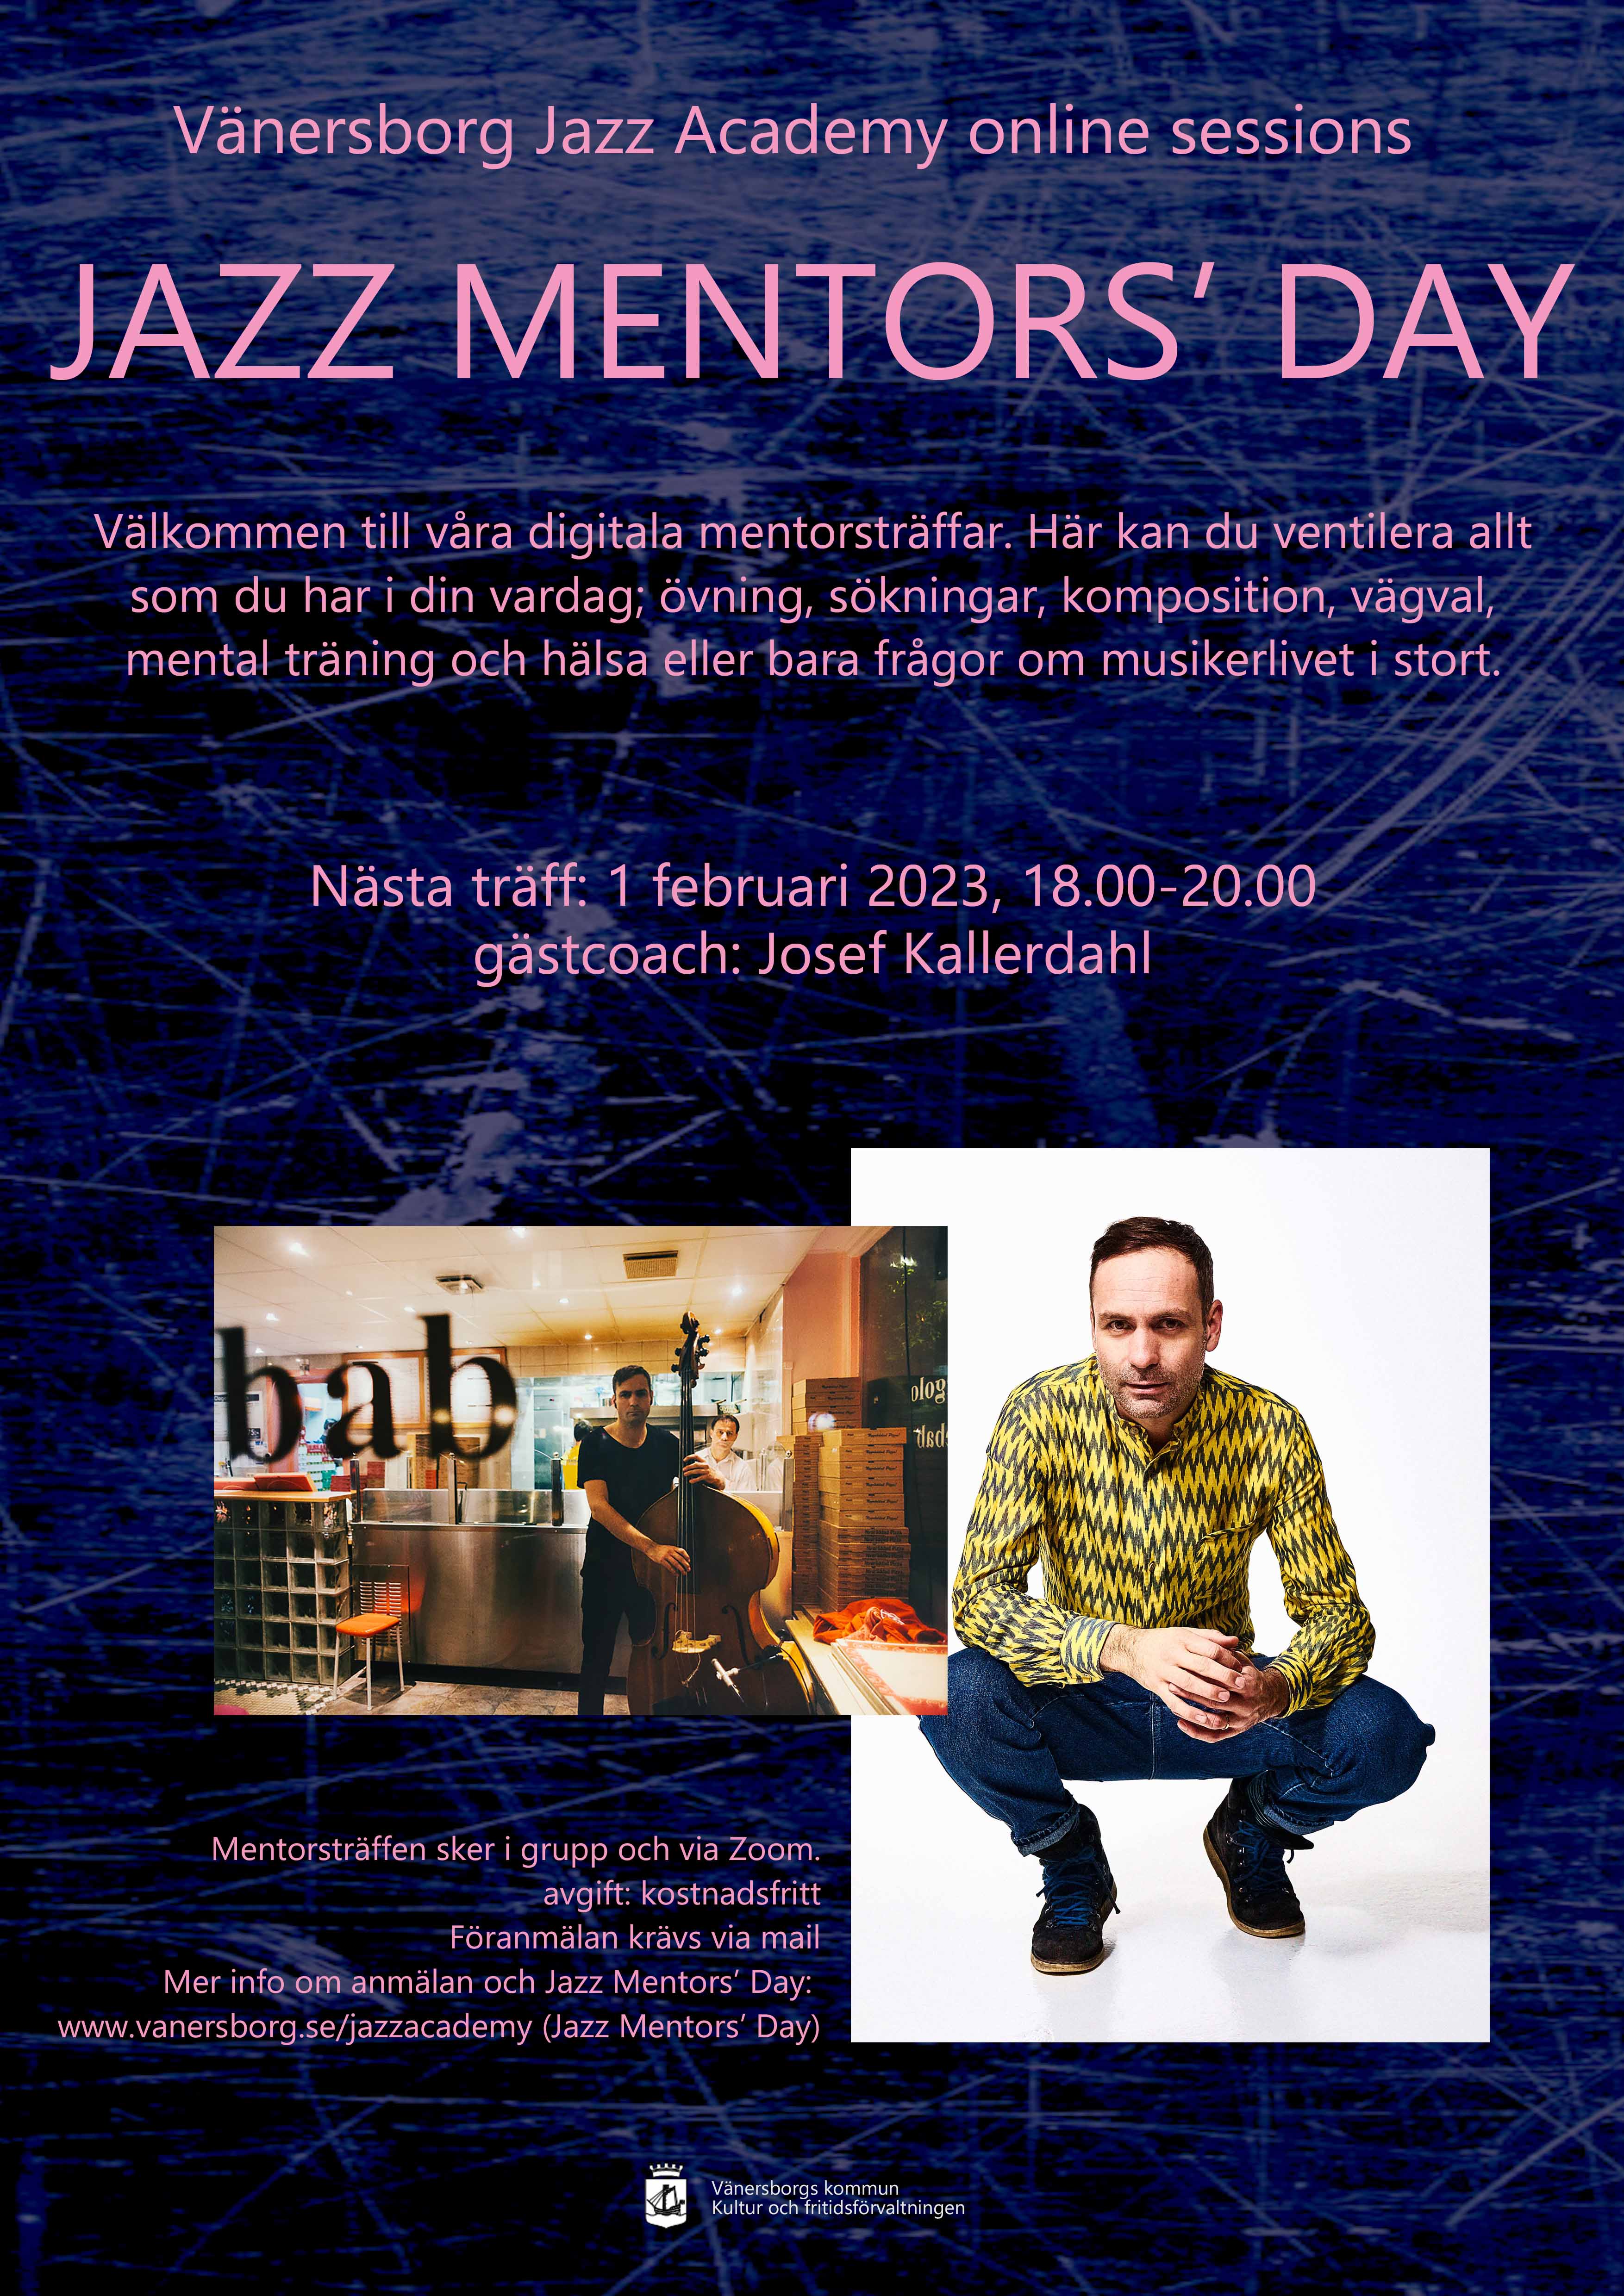 Mentorsträff för musikstuderande inom jazz 1 februari kl 18.00-20.00 maila din anmälan till anna.lundkvist@vanersborg.se